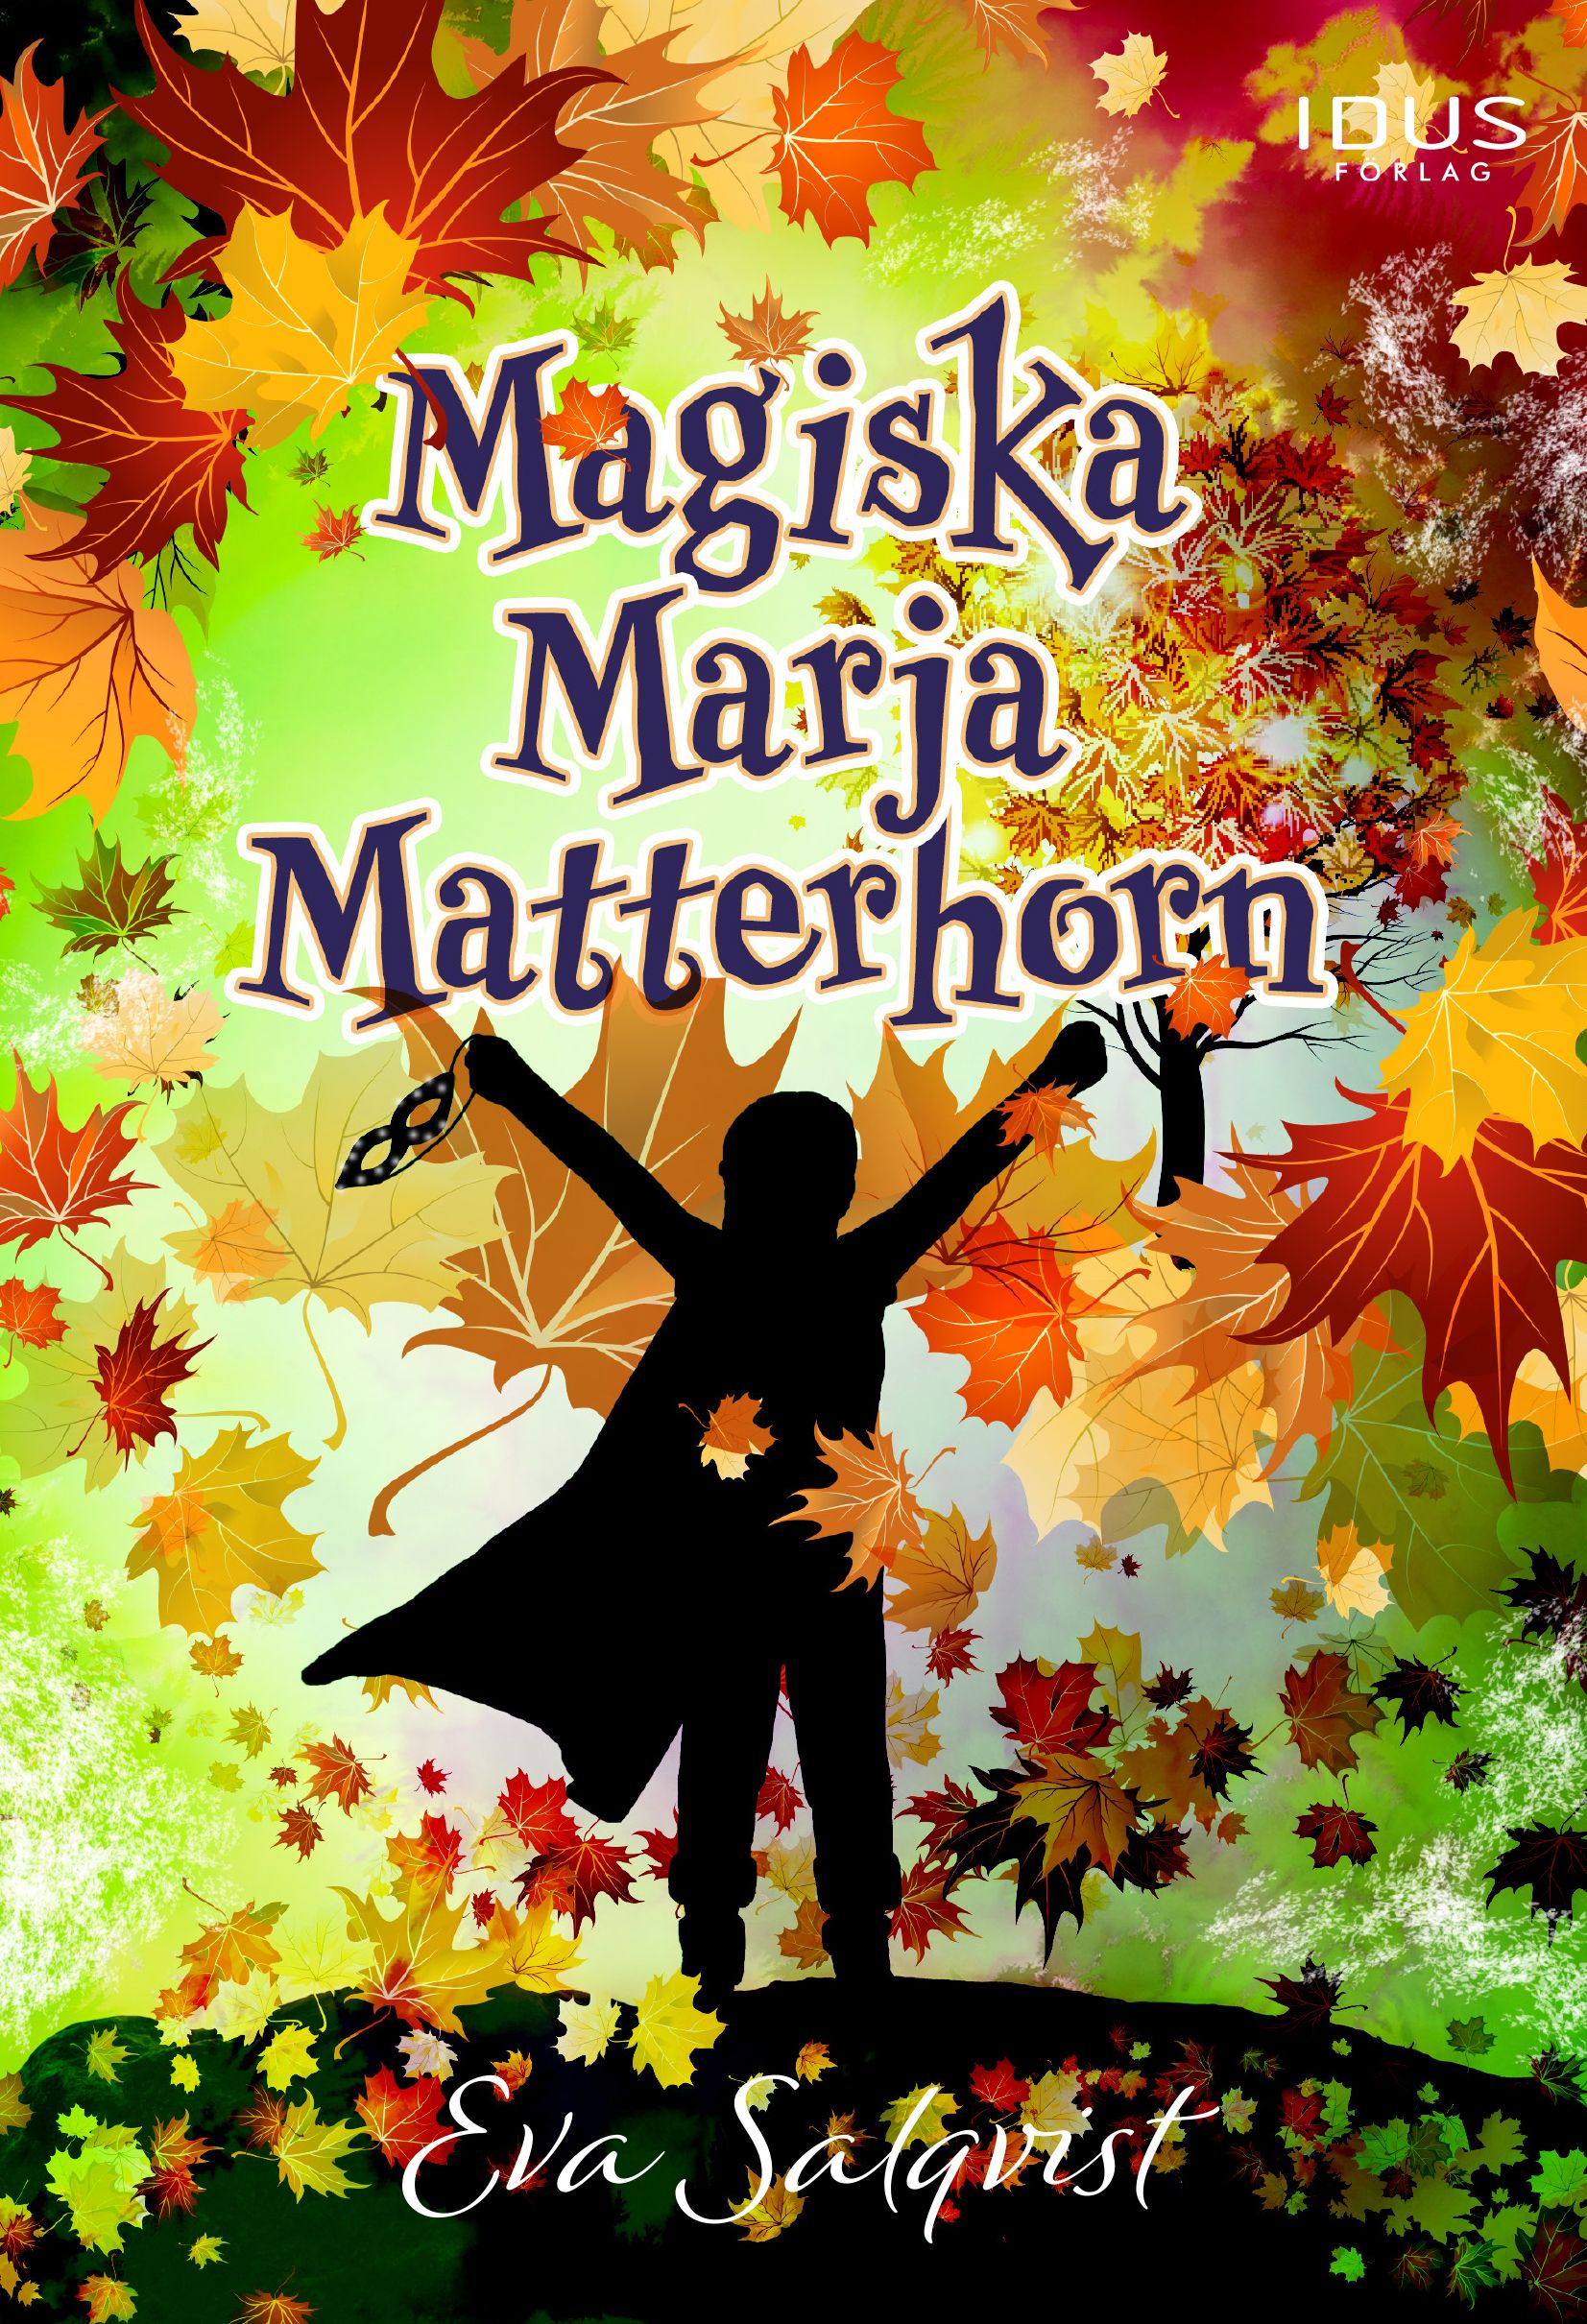 Magiska Marja Matterhorn, eBook by Eva Salqvist